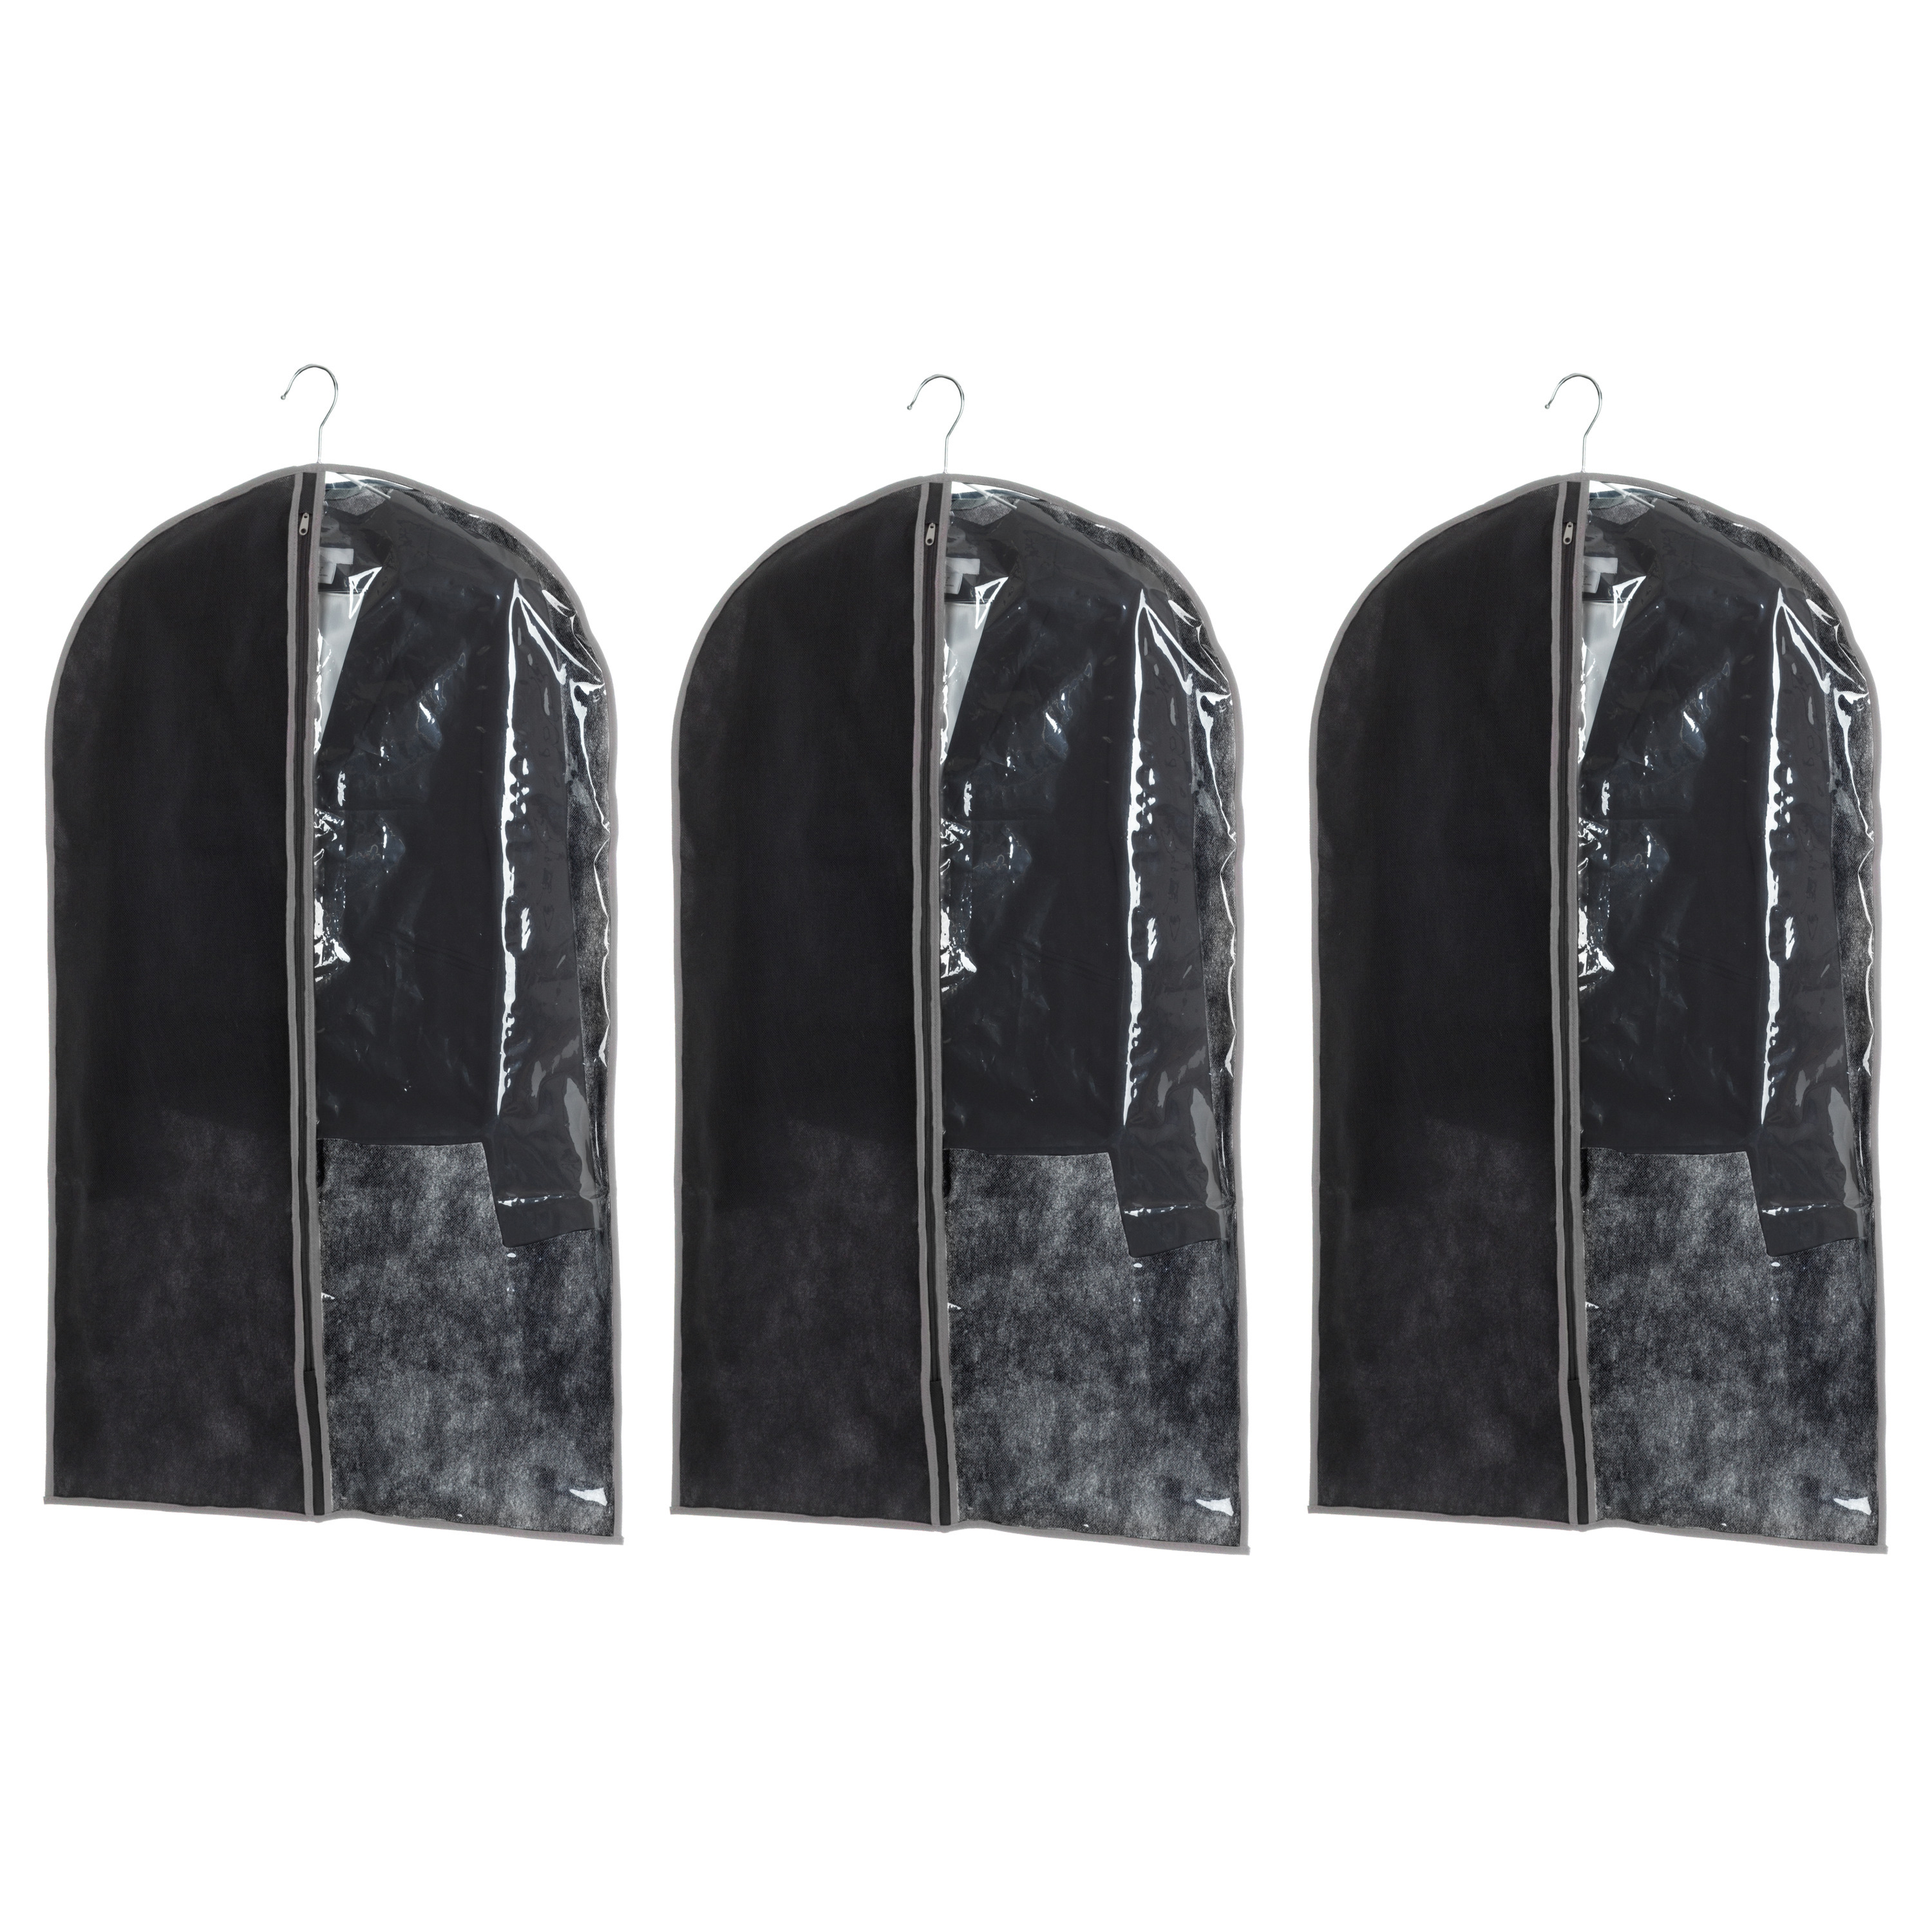 Set van 5x stuks kleding/beschermhoes zwart 100 cm inclusief kledinghangers